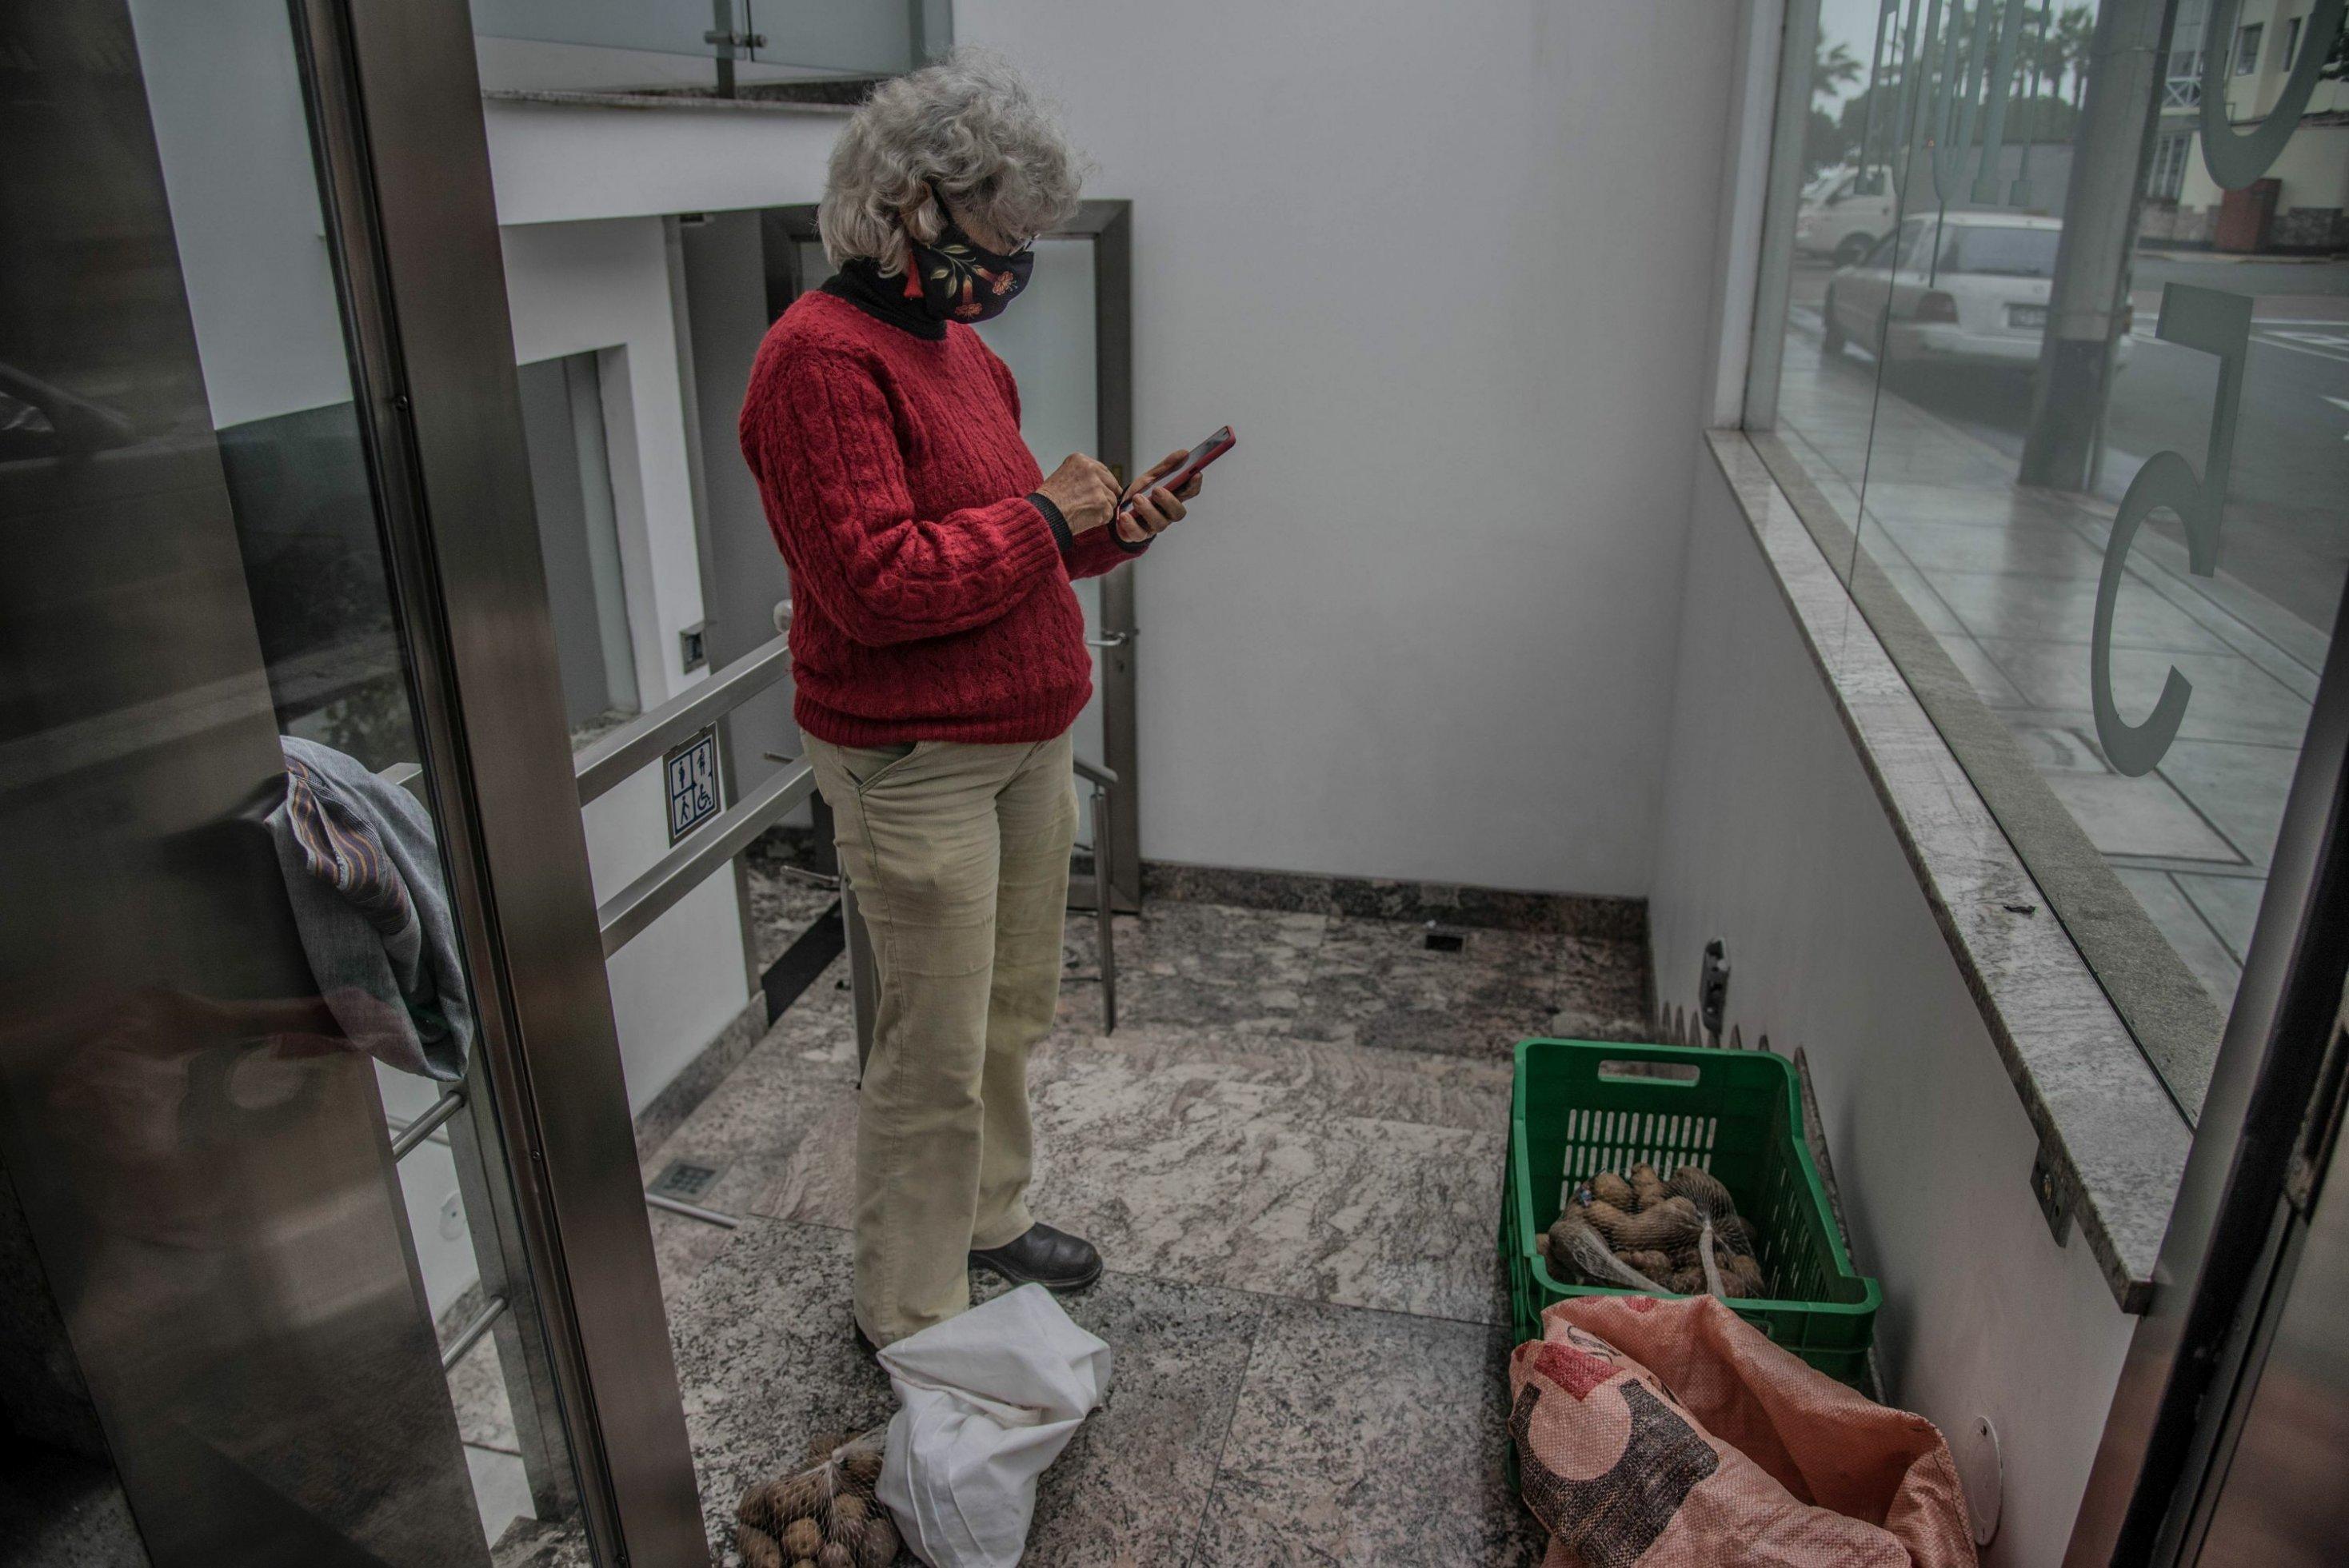 Eingangsbereich eines modernen Hochhauses. Eine Frau mit beiger Cordhose und rotem Pulli, weissen Locken und Mundschutz, tippt etwas in einen Taschenrechner. Vor ihr auf dem Boden eine Kiste mit Kartoffeln.